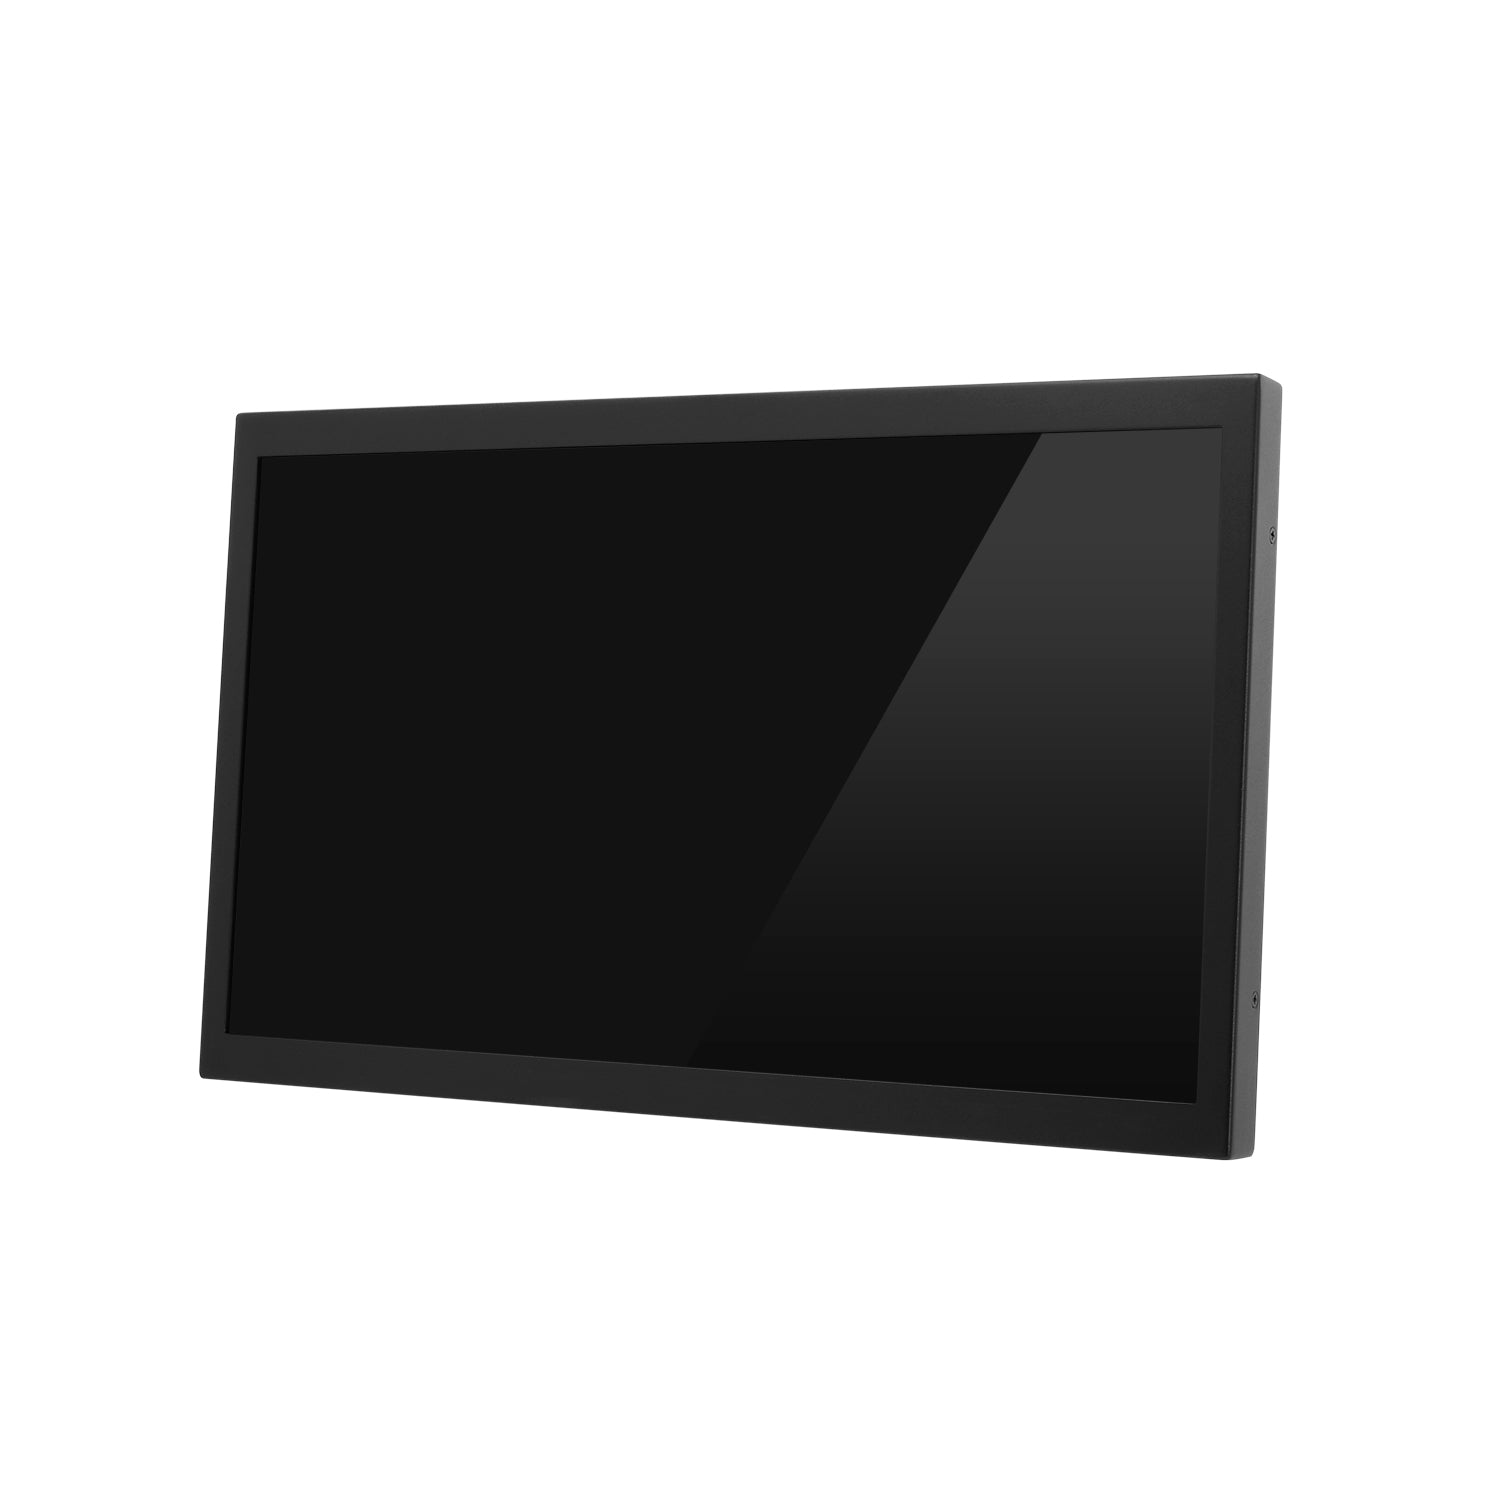 .3インチFullHD産業用組み込みディスプレイ plus one PRO [LCD